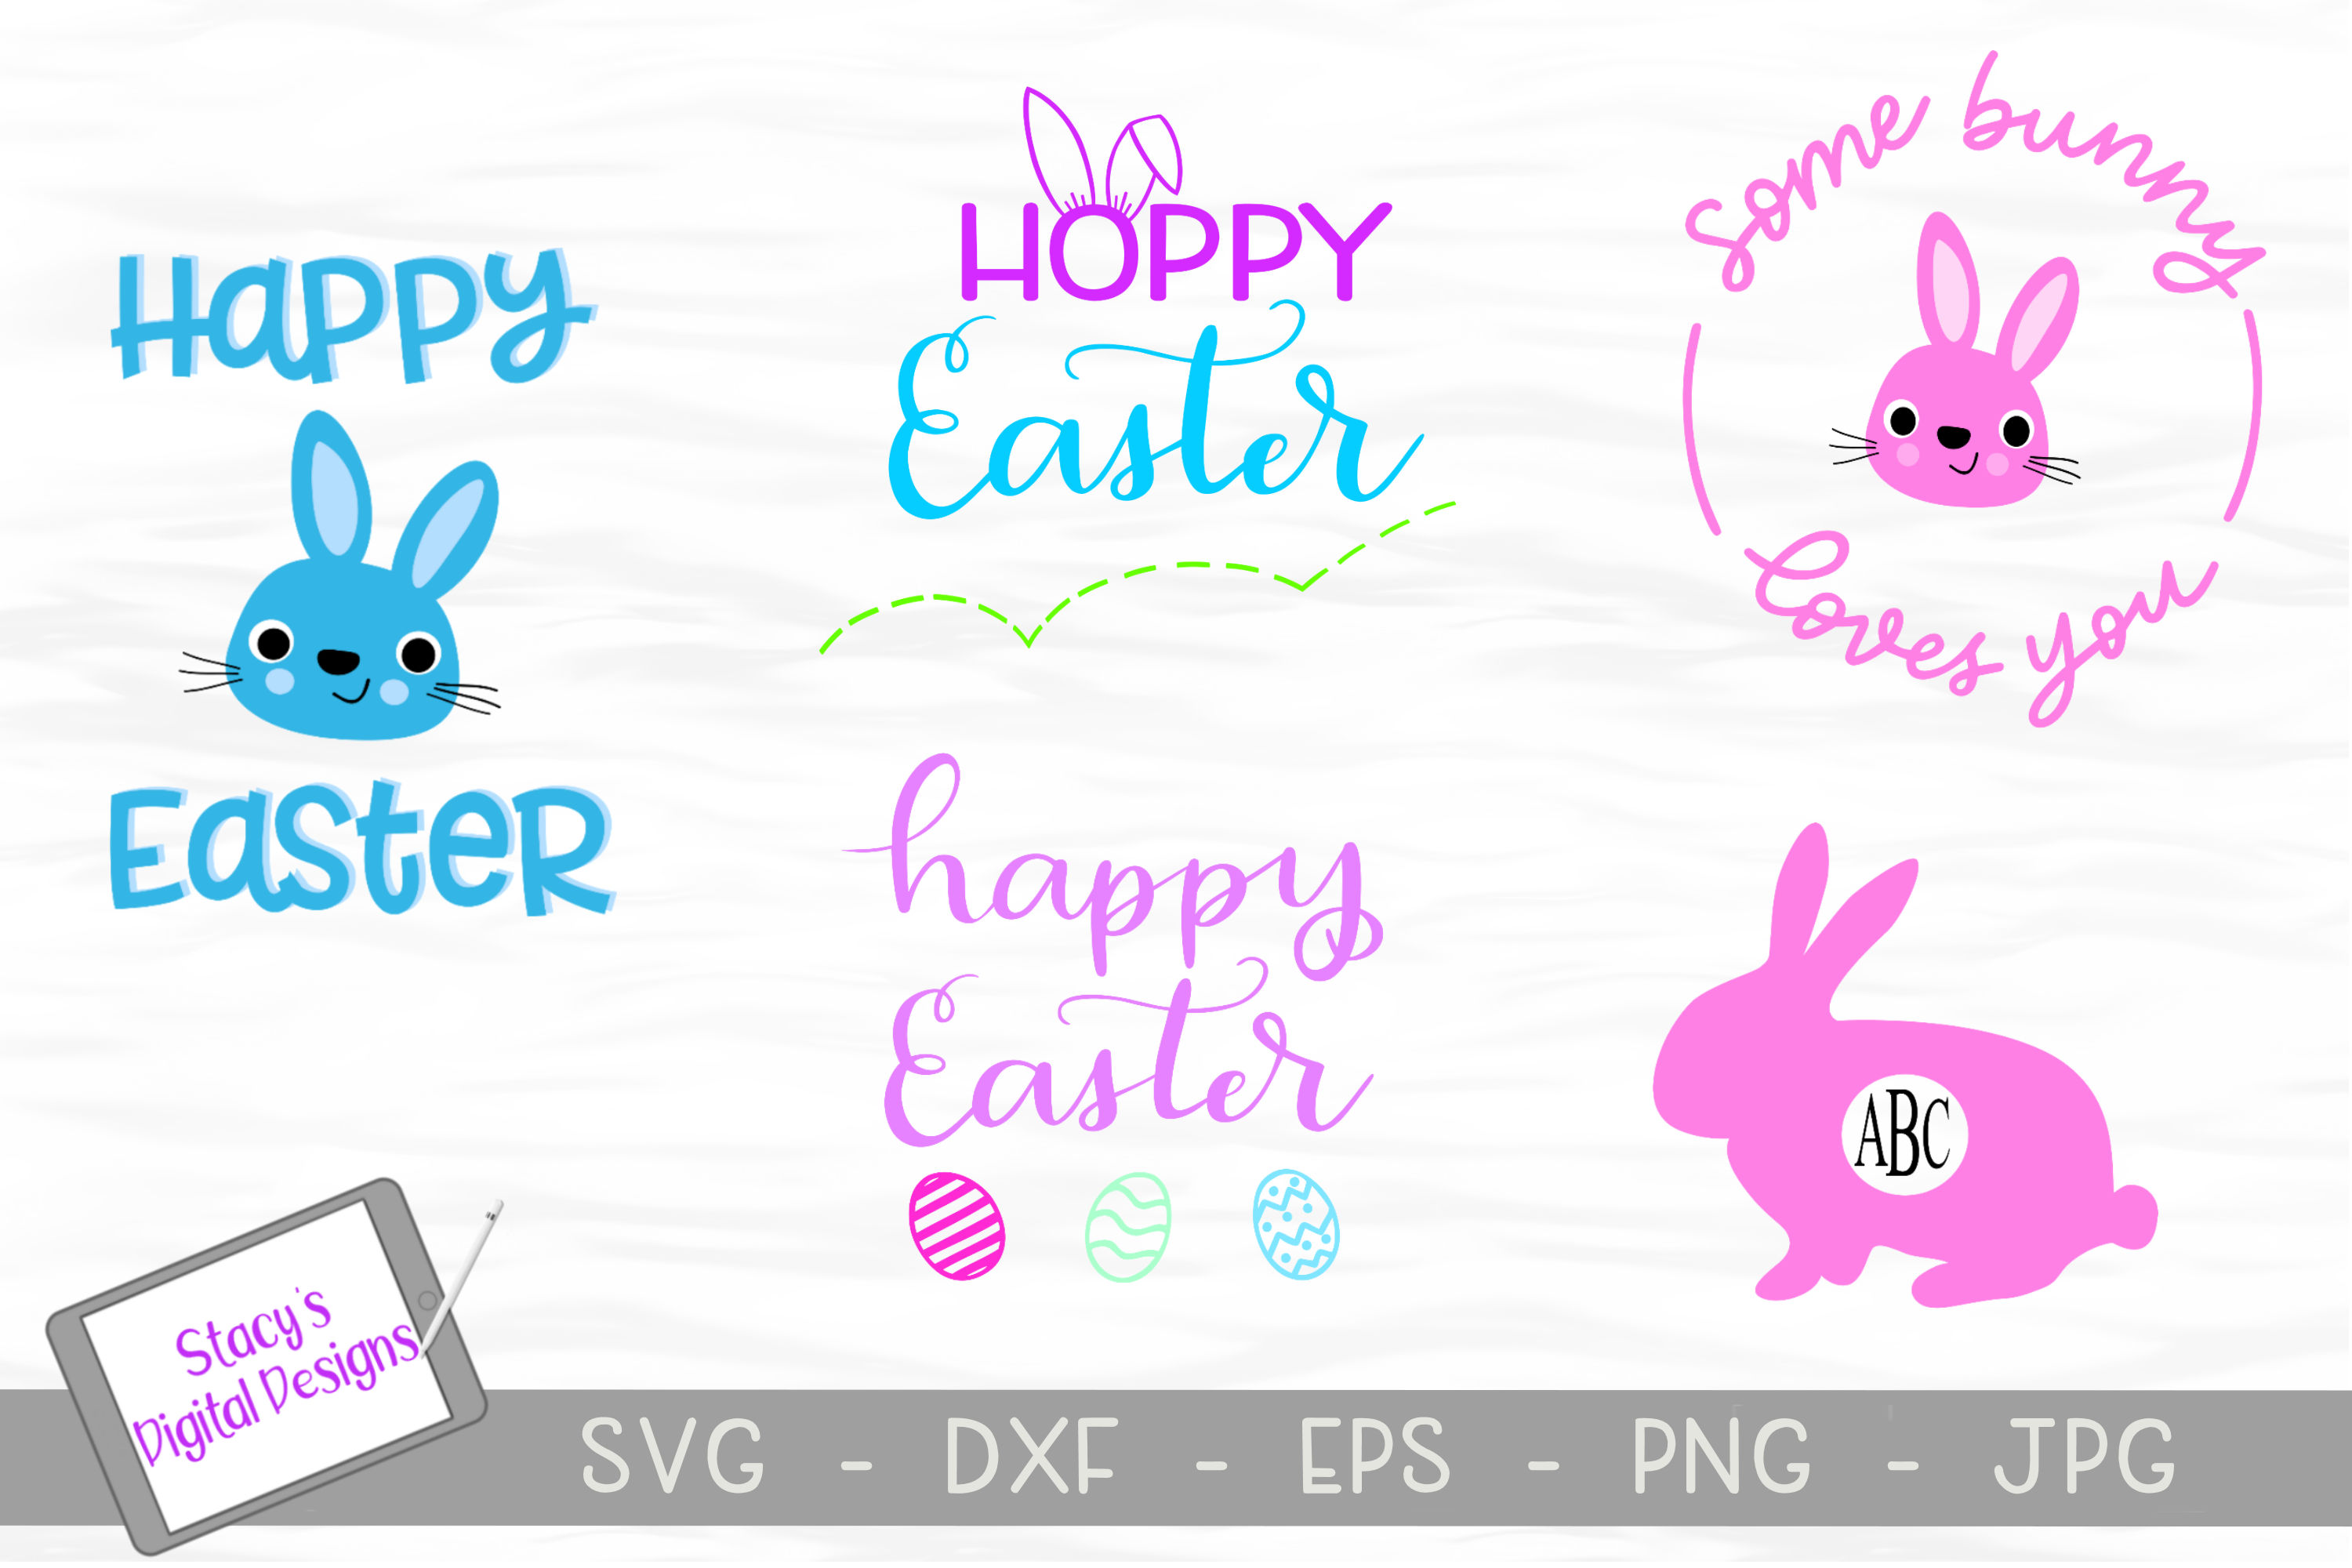 Download Easter SVG Bundle- Includes 5 Easter SVG designs